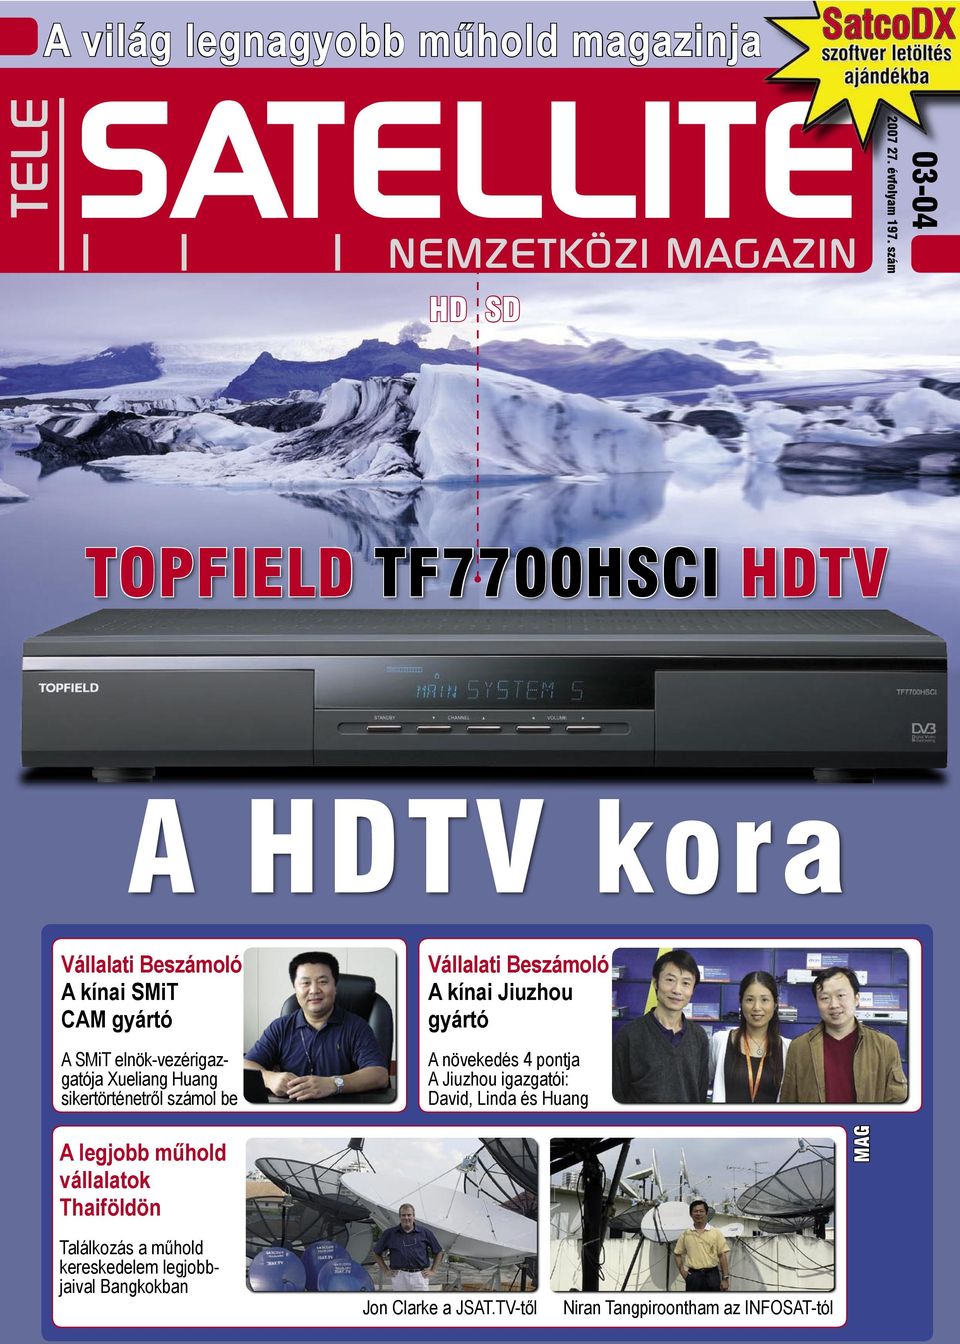 A világ legnagyobb műhold magazinja SATELLITE HD SD TOPFIELD TF7700HSCI  HDTV. A HDTV kora. Vállalati Beszámoló A kínai Jiuzhou gyártó - PDF  Ingyenes letöltés